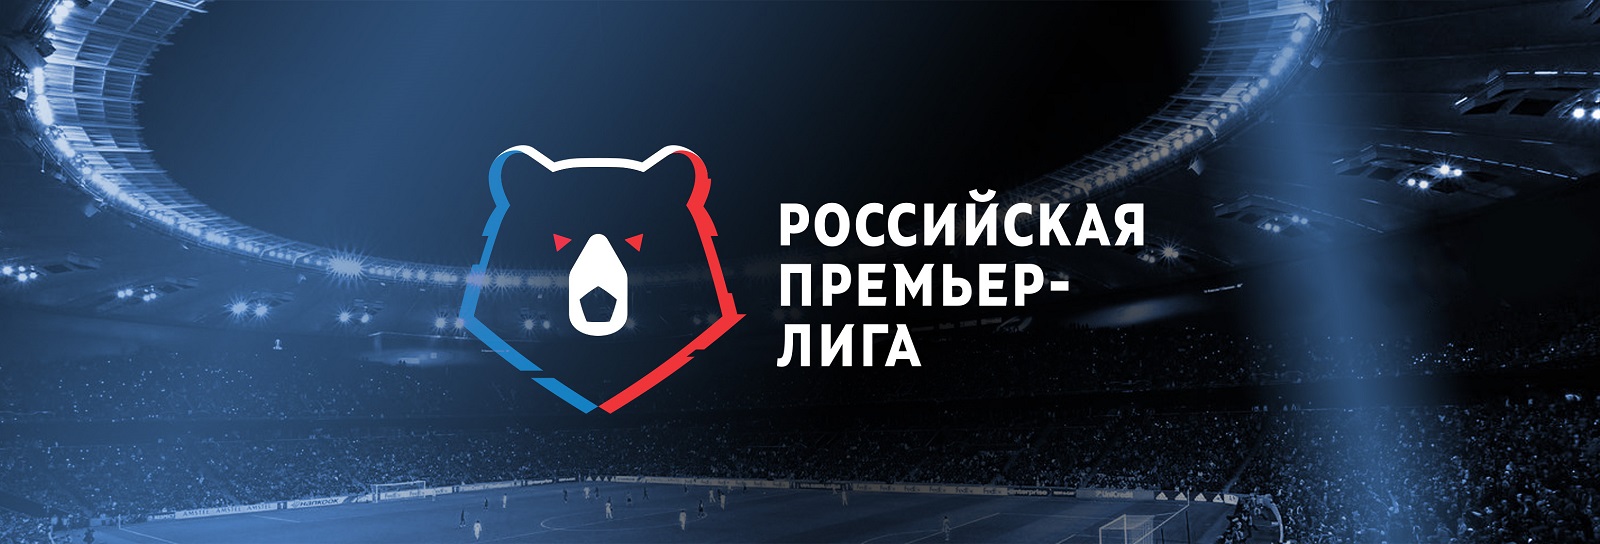 Russische Premier Liga